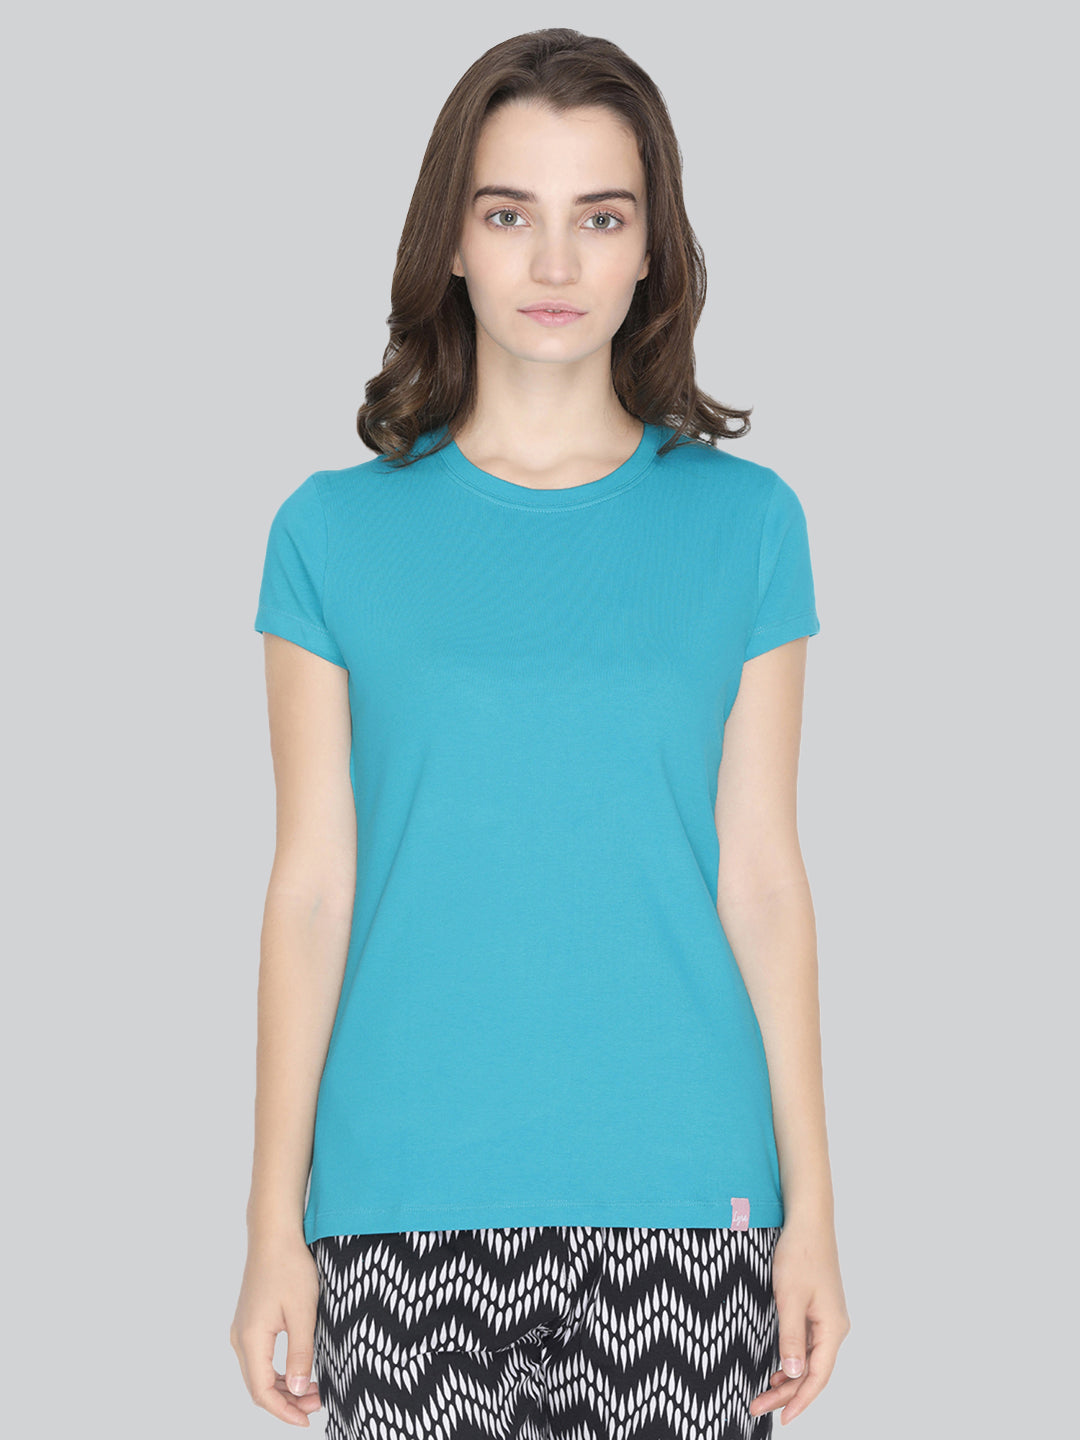 Blue Round Neck T-Shirt #401